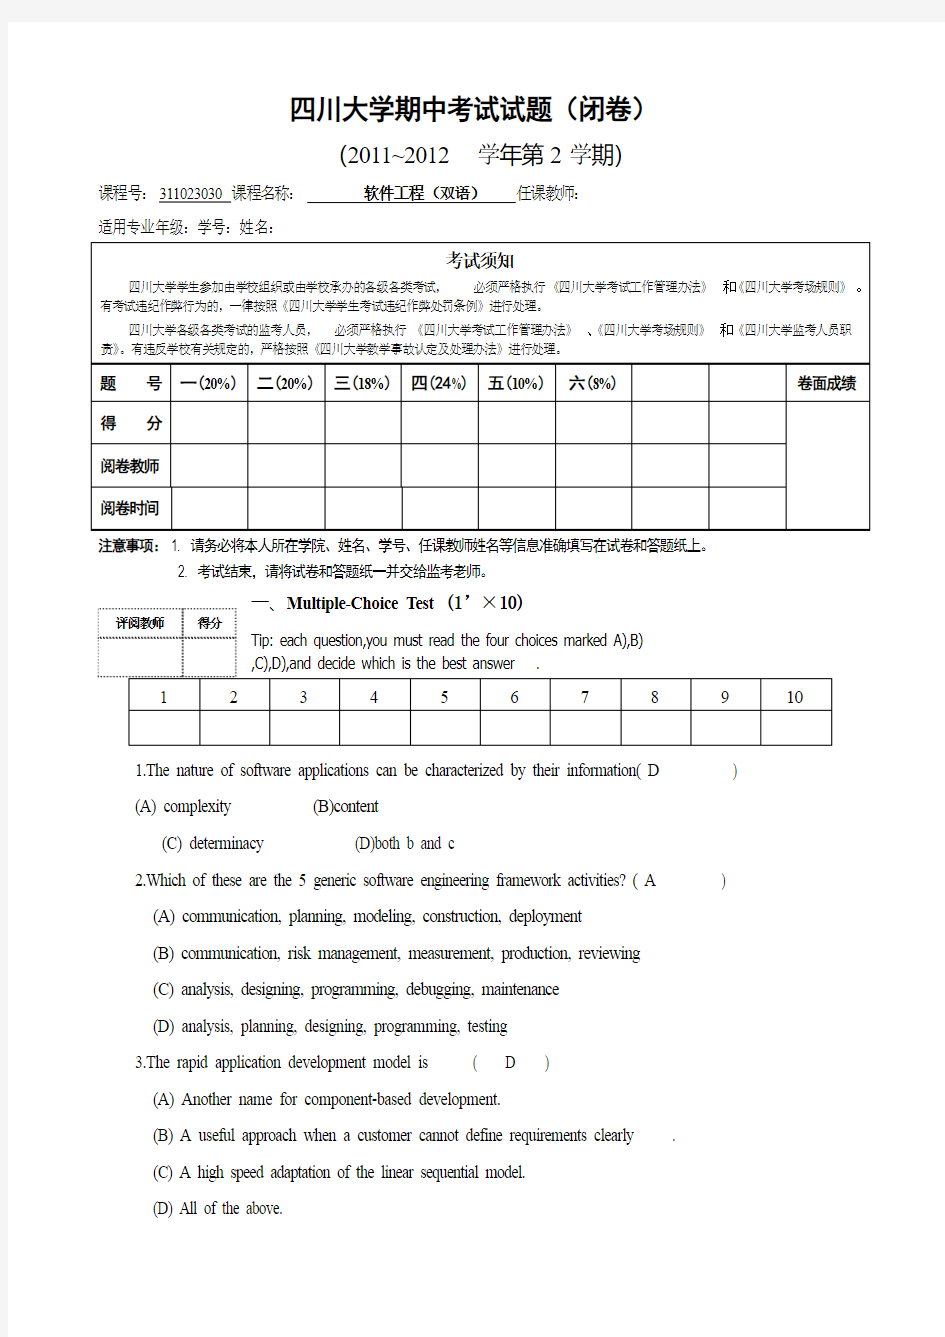 四川大学软件工程(双语)期中考试试题 最终版